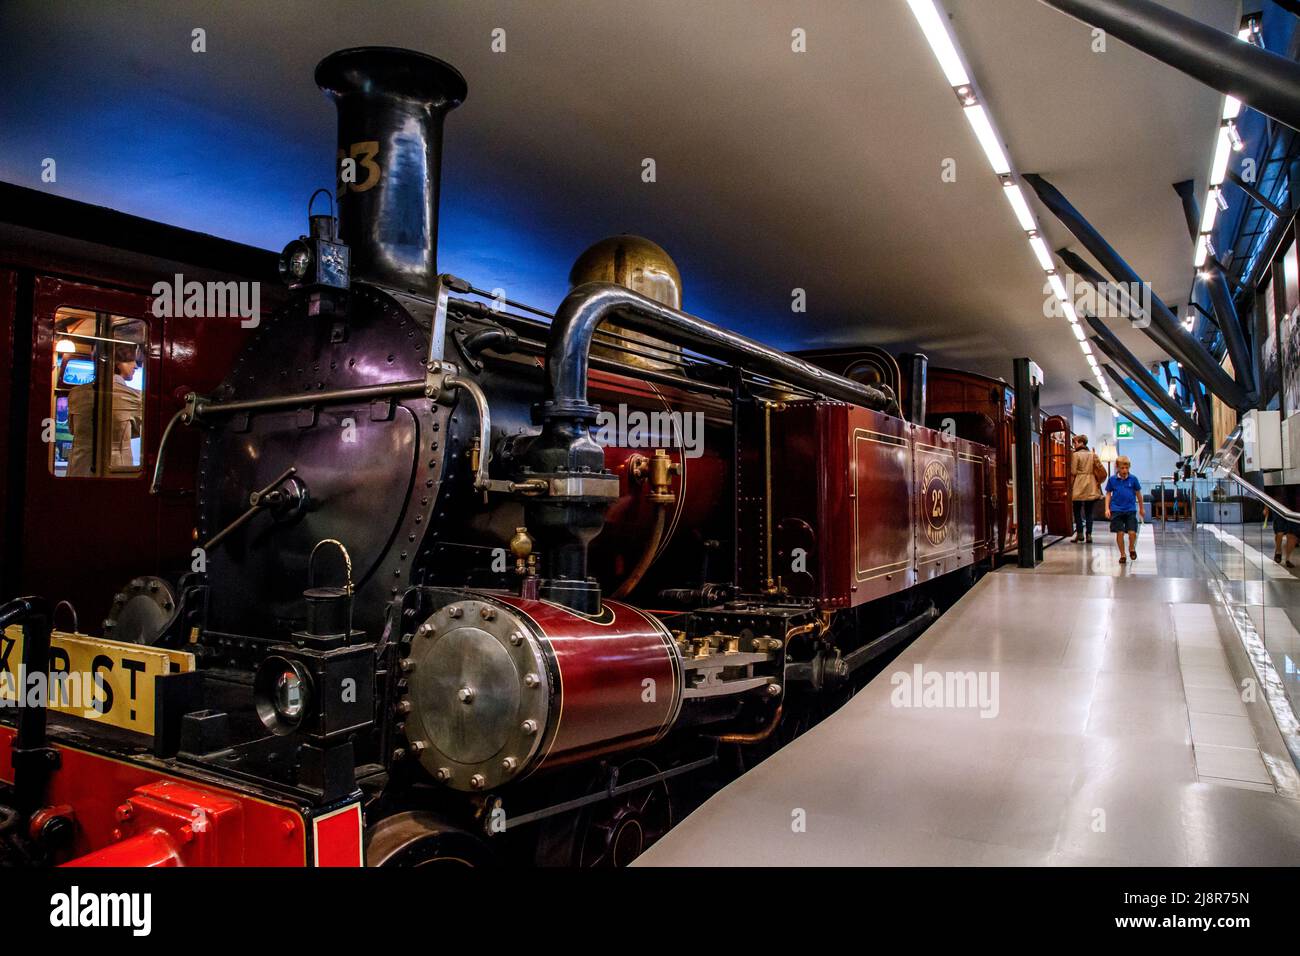 London underground steam фото 64